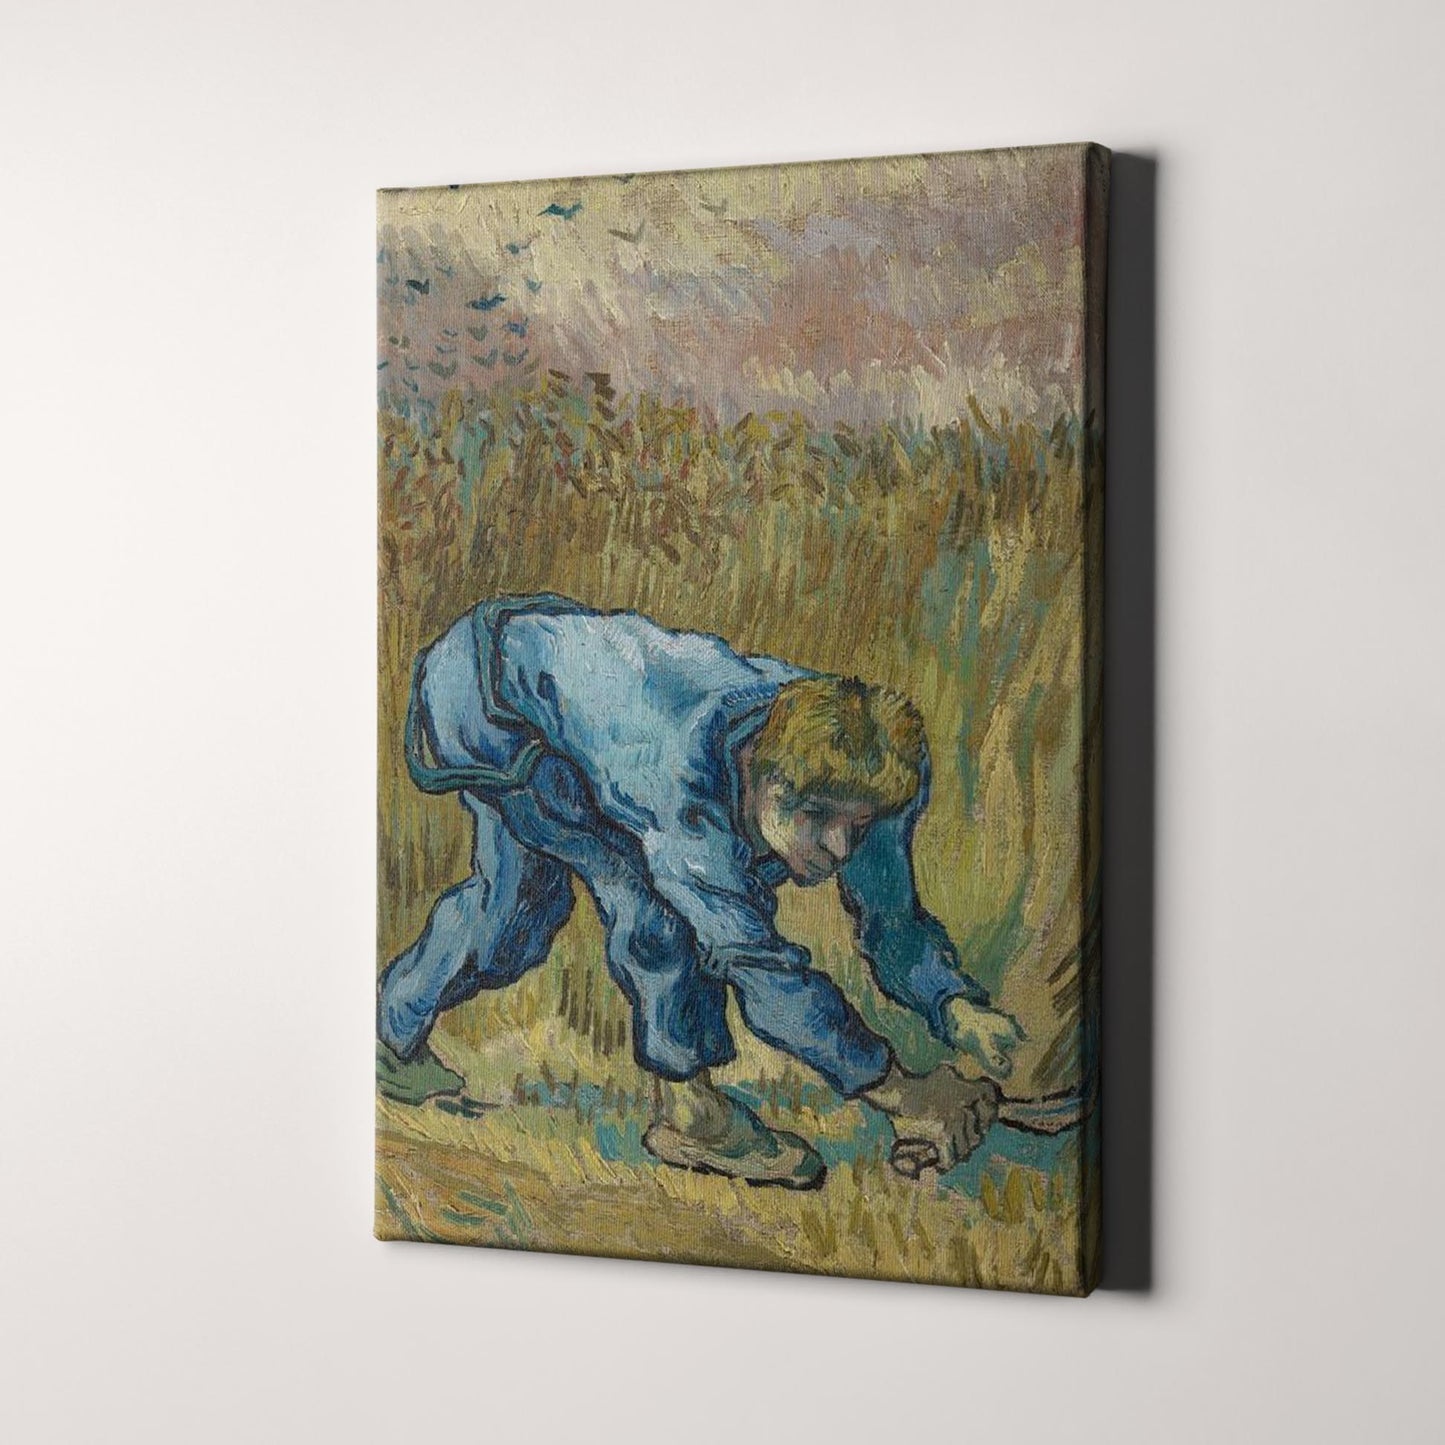 The Reaper (1889) by Van Gogh